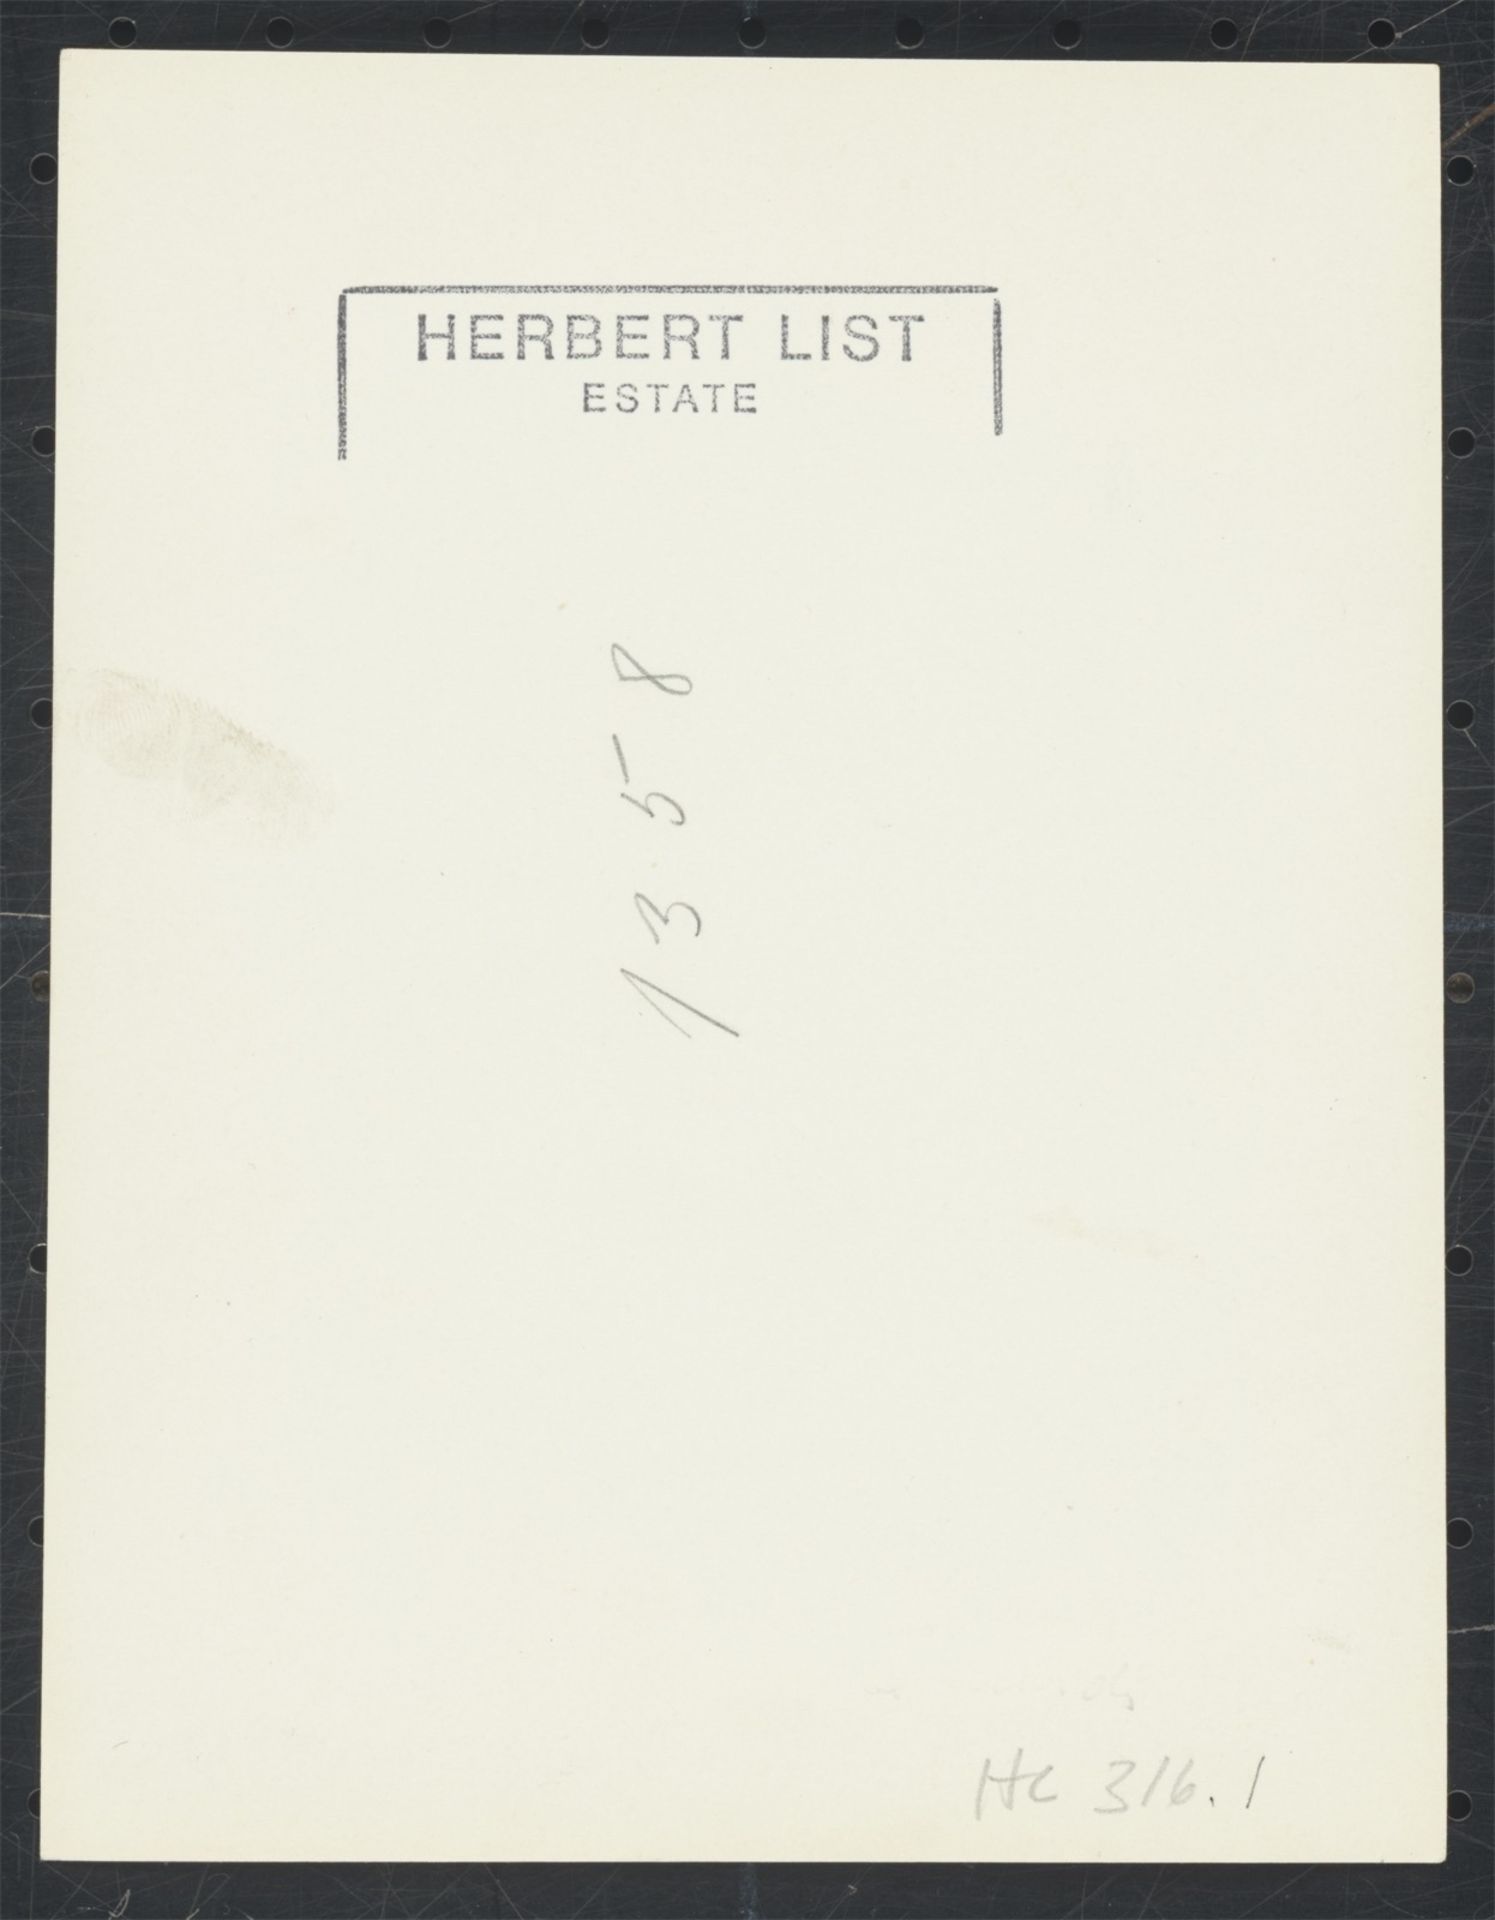 Herbert List. Flasche und Zeitung, Paris. 1936 - Bild 3 aus 4